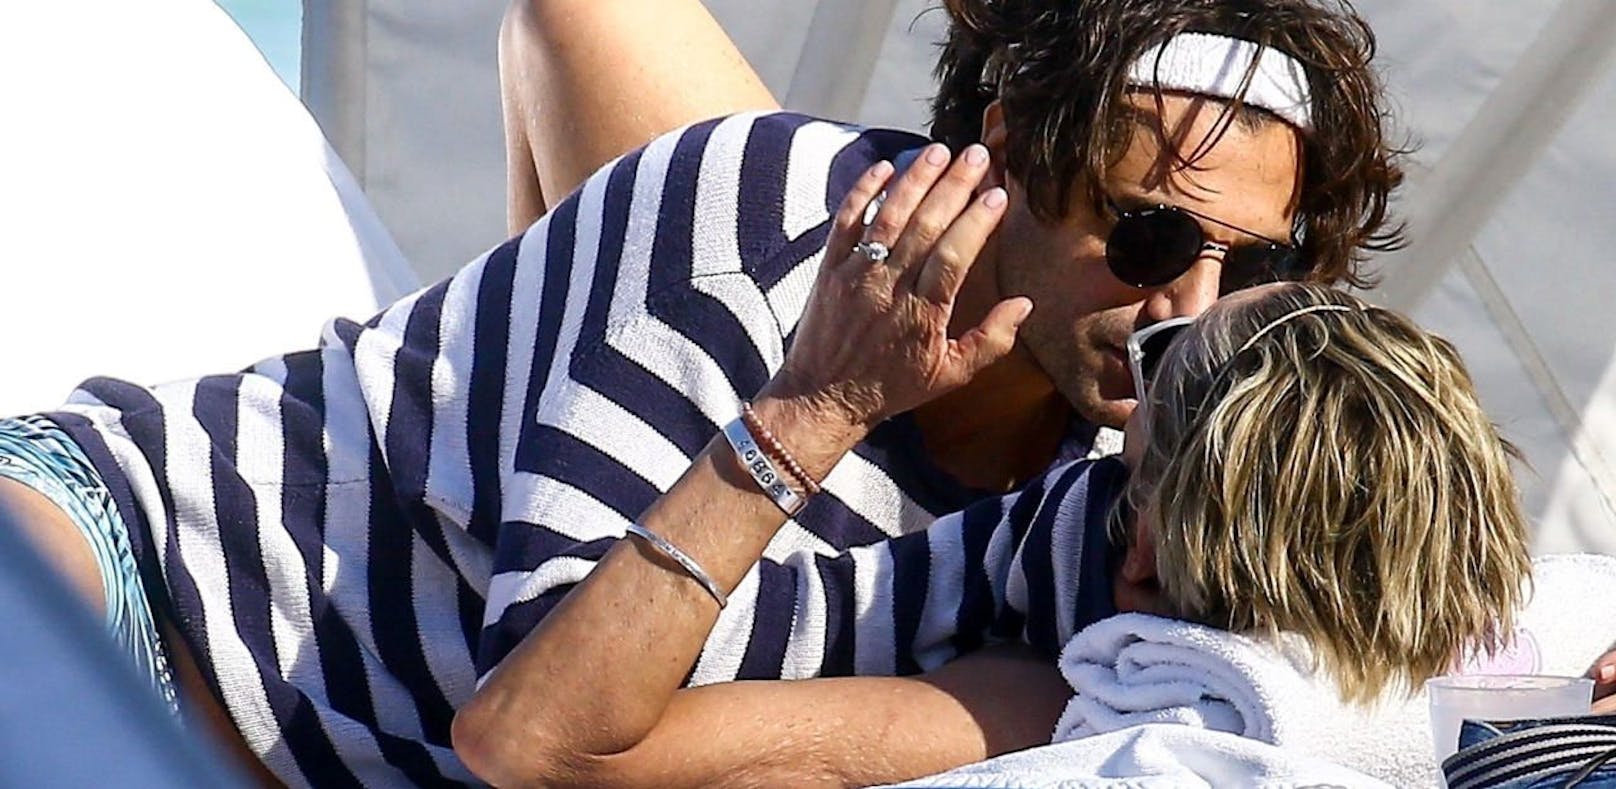 Sharon Stone mit Ring gesichtet - Ist sie verlobt?